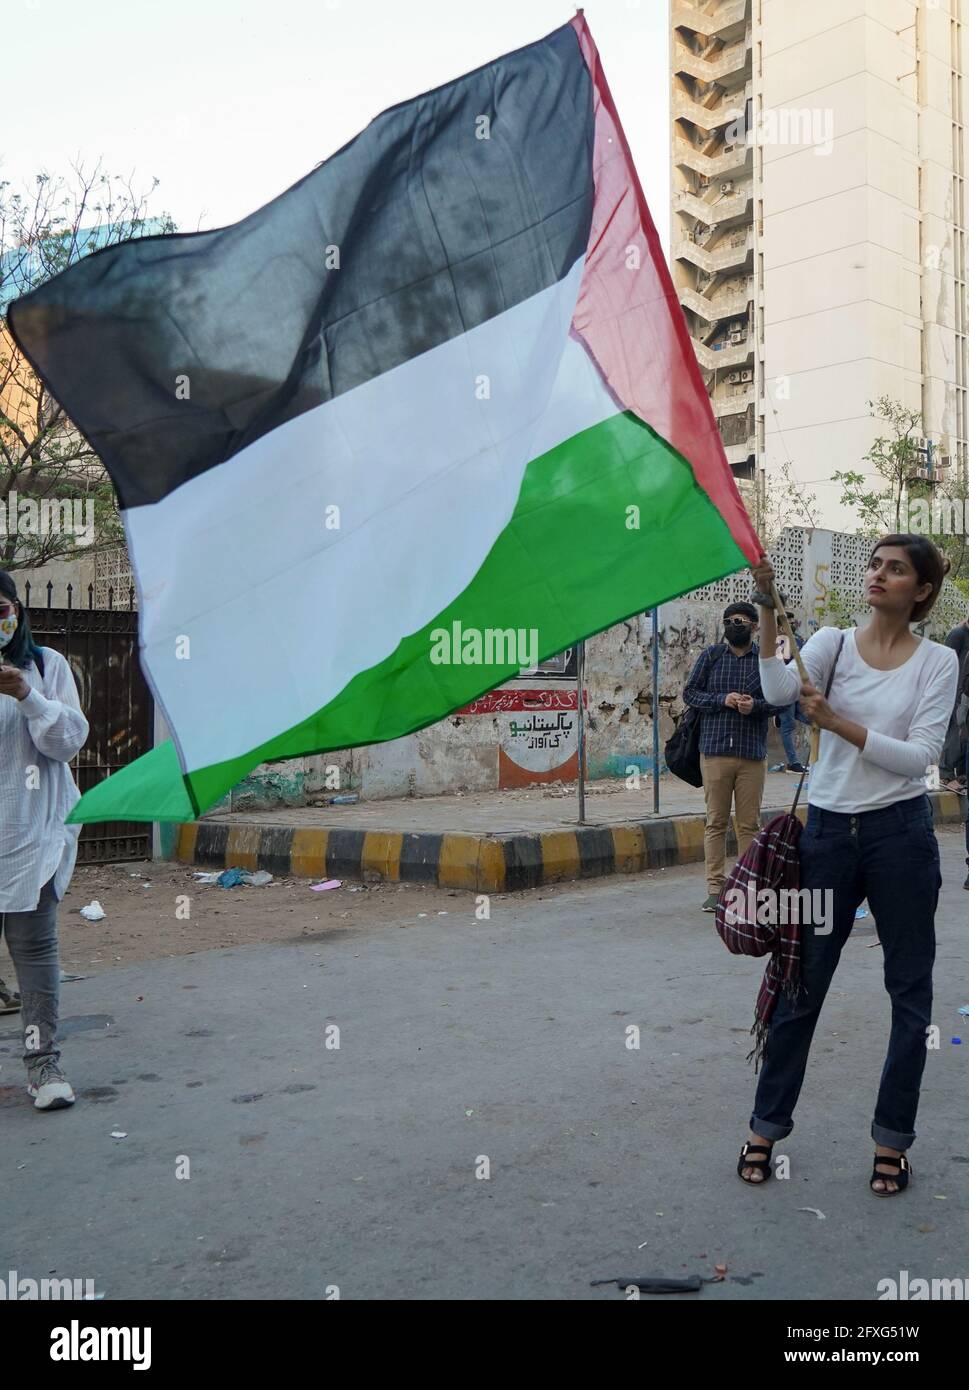 A-Pro Palestine Protestveranstaltung im Karachi Press Club während des Palästina- und Israel-Konflikts zeigen die pakistanischen Bürger ihre Unterstützung für Palästina. Stockfoto